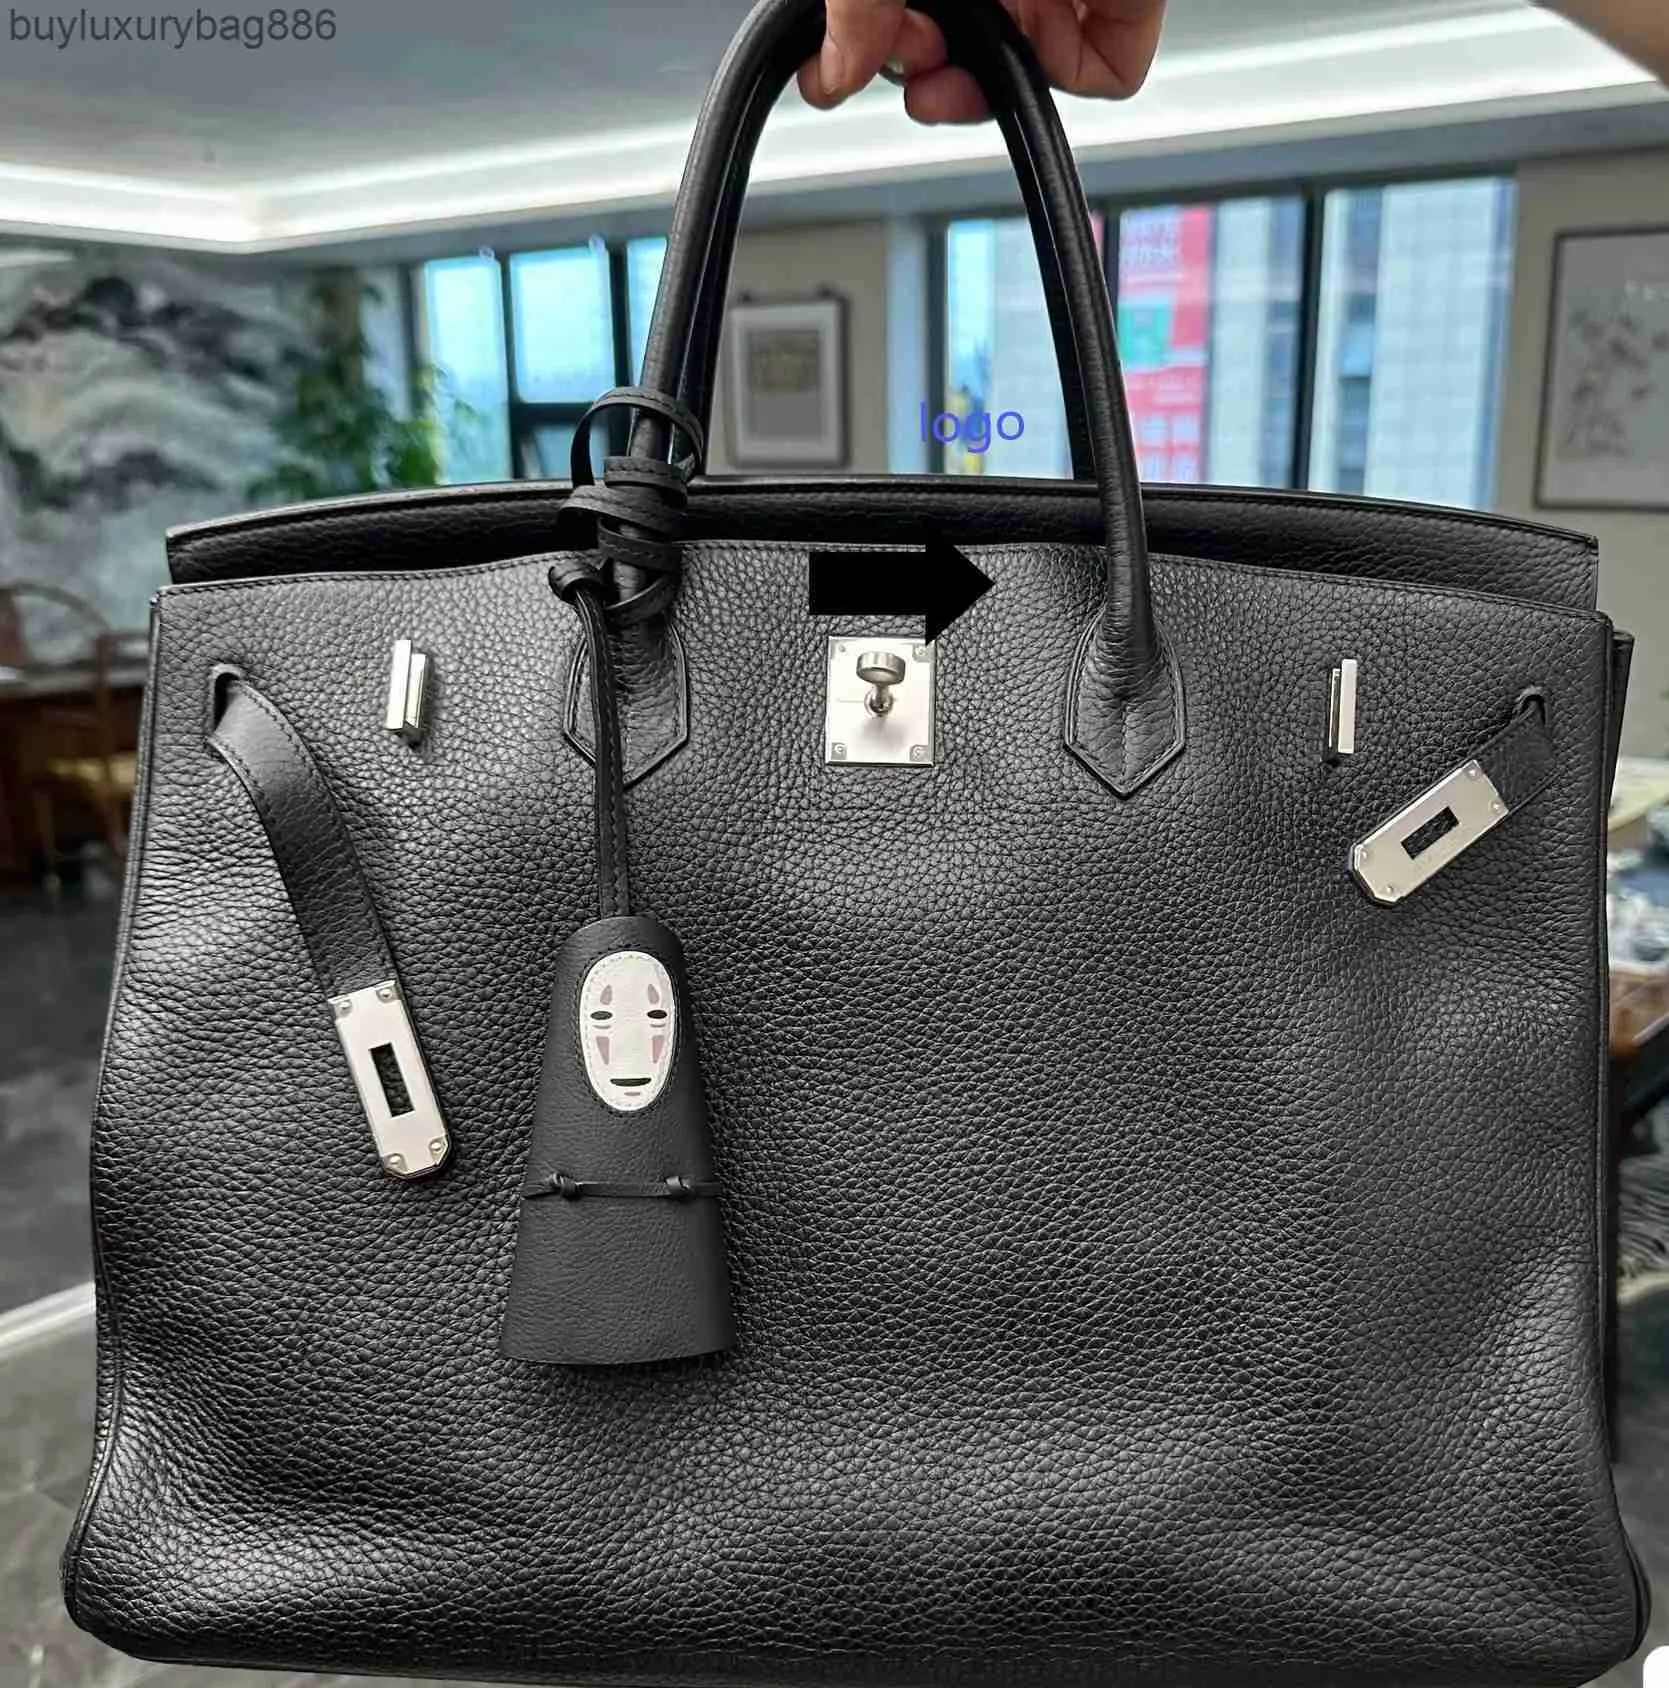 Designer-Tasche Handtasche Togo Schwarz Noir Silber Hardware Birk 51 cm groß Hübsche neue klassische Handtasche handgefertigt Wachsfaden Mode TOP-Qualität Umhängetasche Luxus ygf